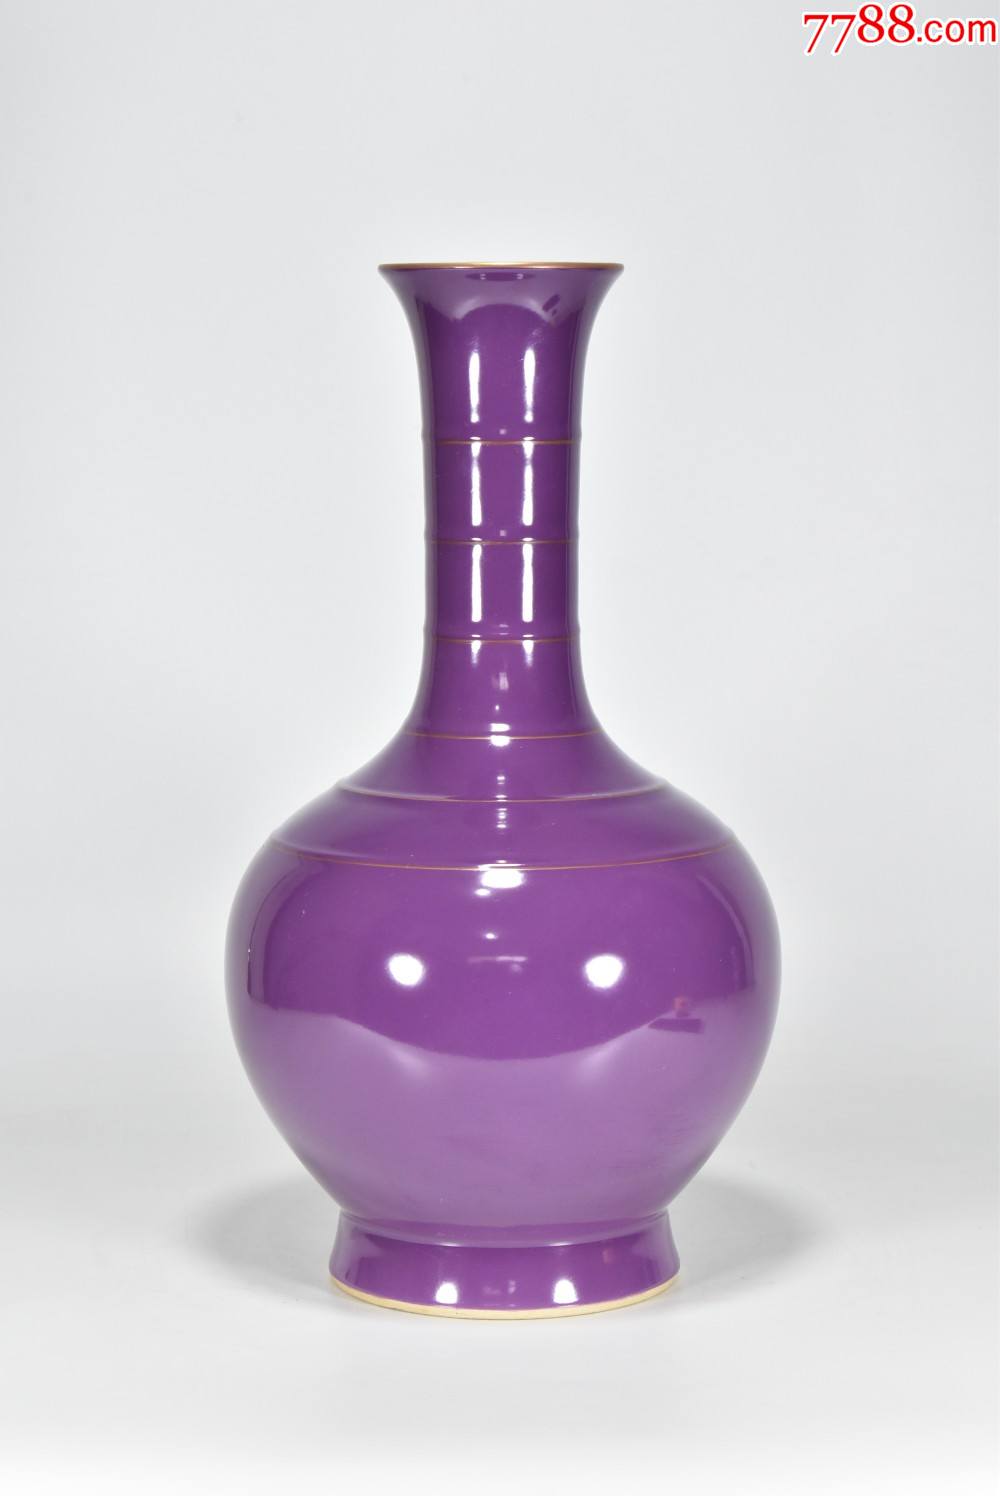 紫罗兰釉描金口胆瓶高35厘米直径19厘米工艺品